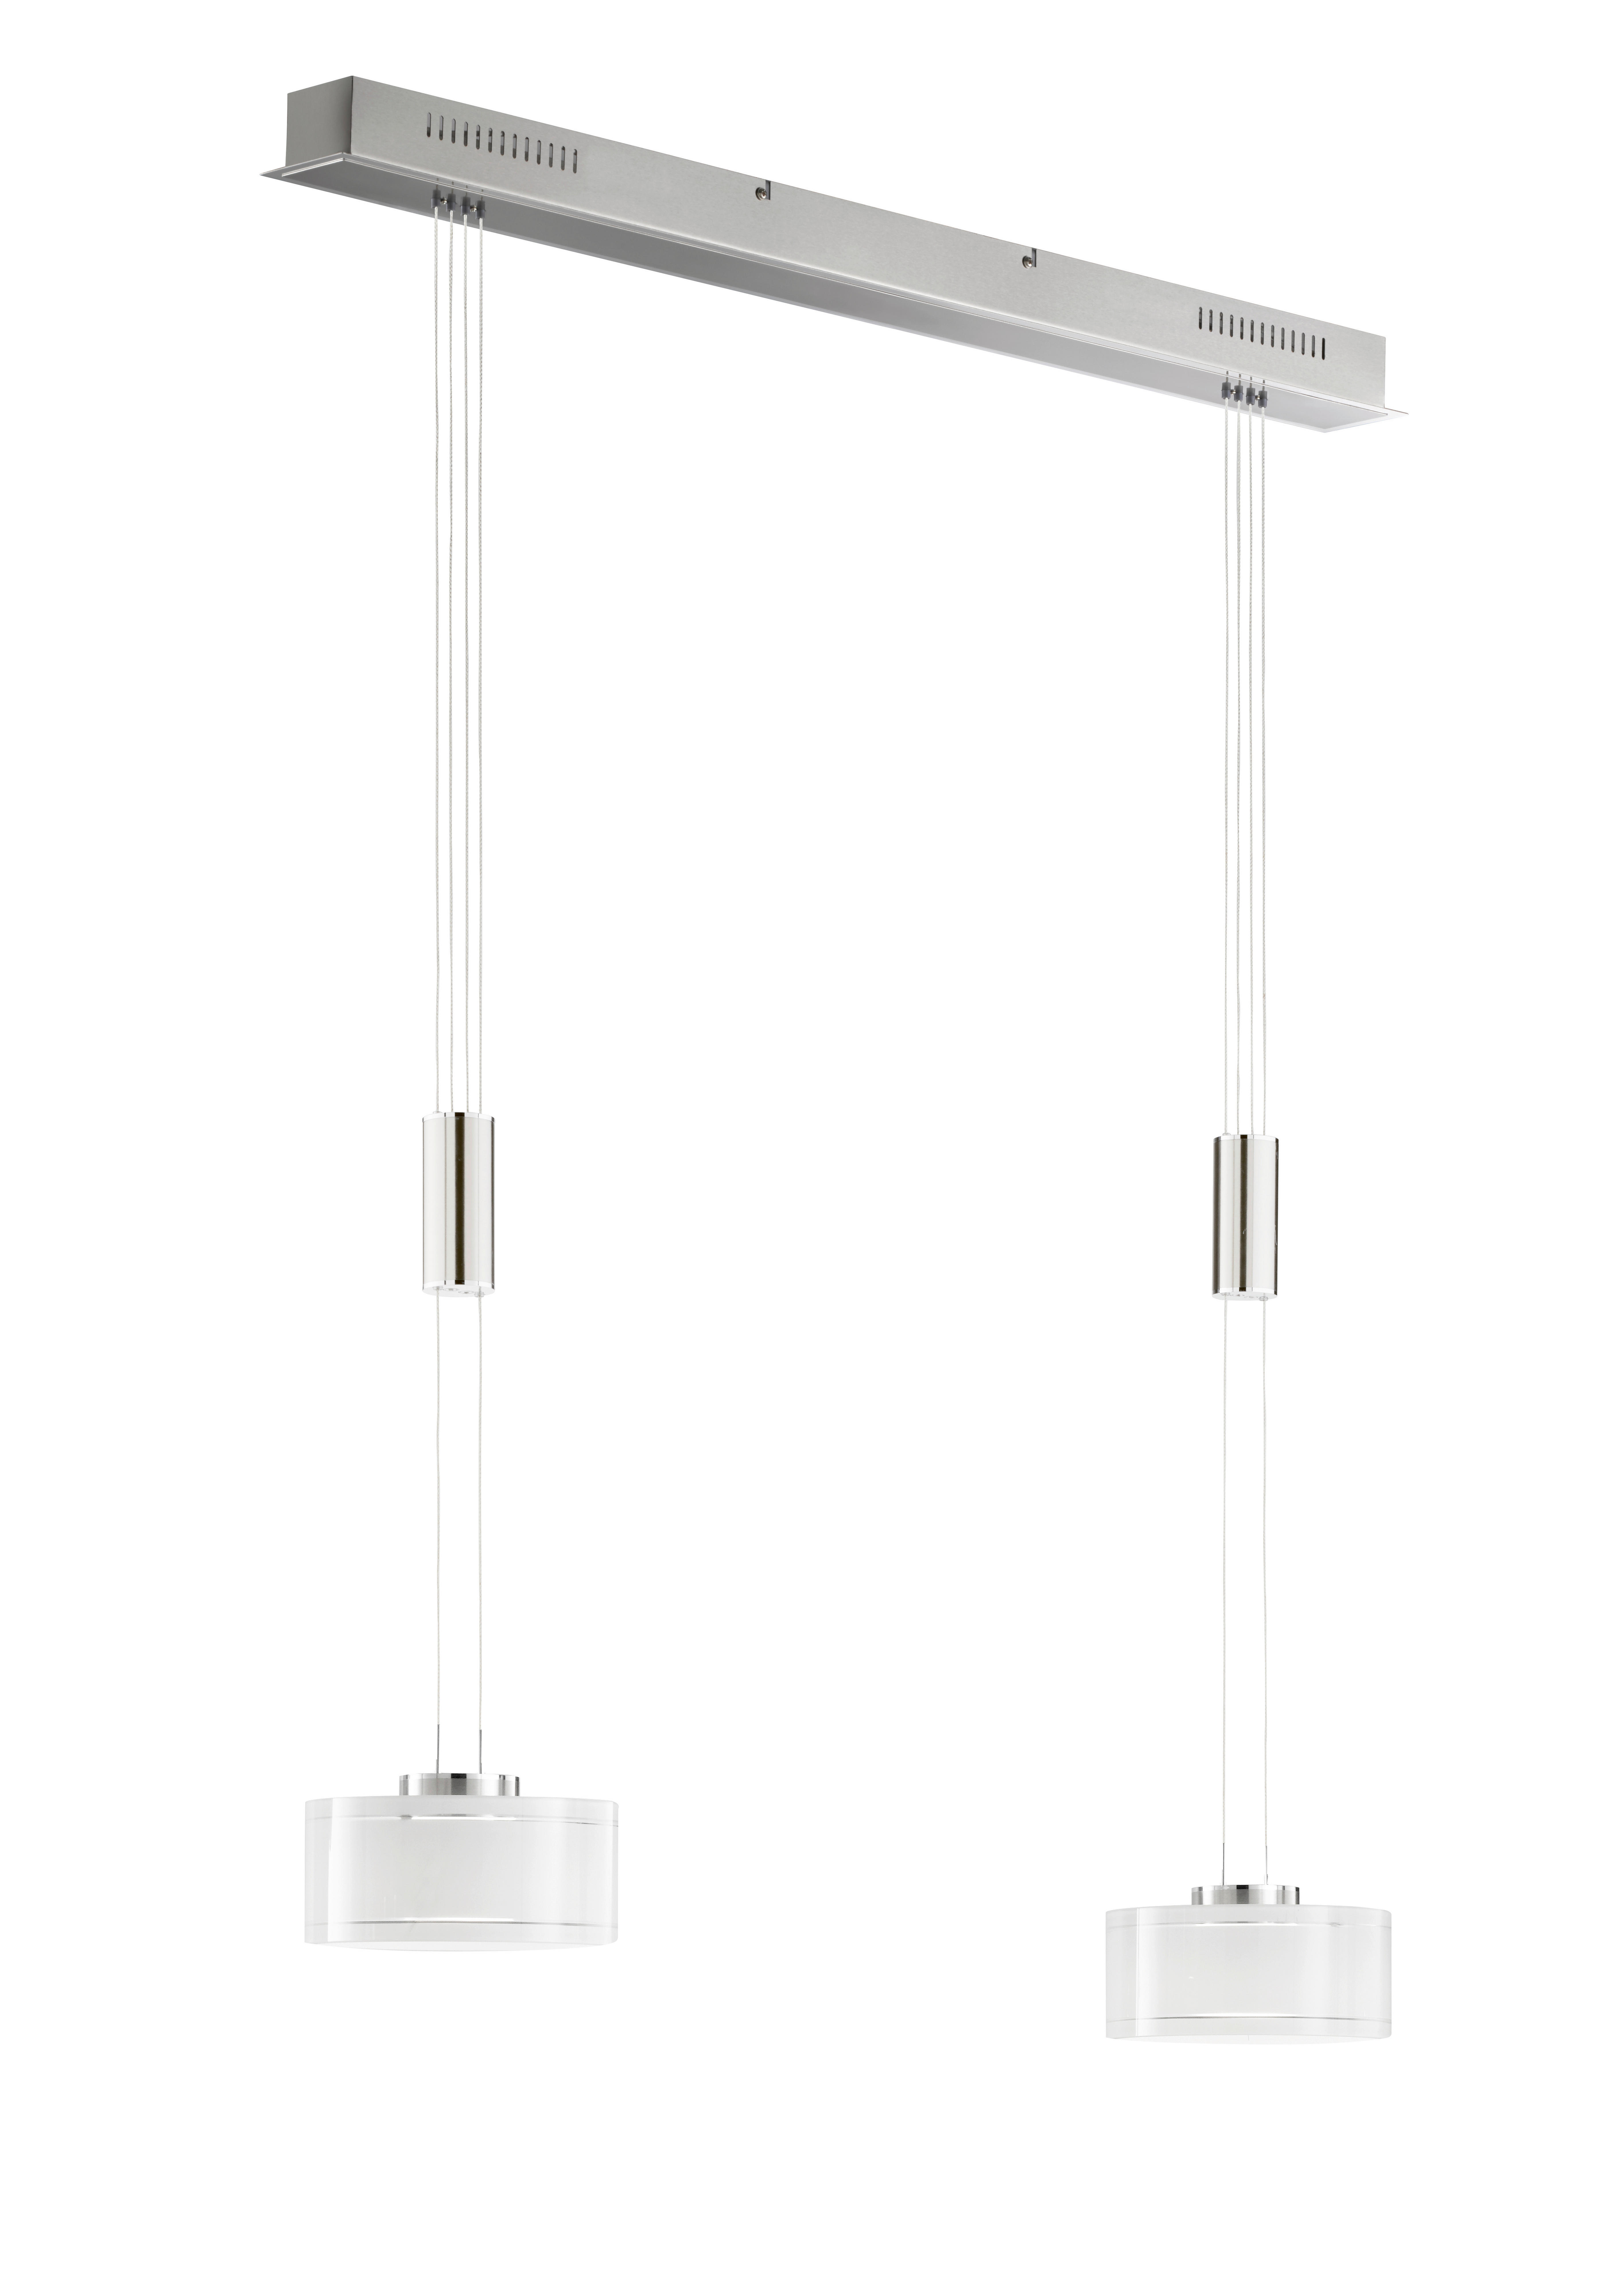 LED-HÄNGELEUCHTE Lavin 64/20/150 cm   - Chromfarben/Nickelfarben, Design, Glas/Metall (64/20/150cm) - Fischer & Honsel